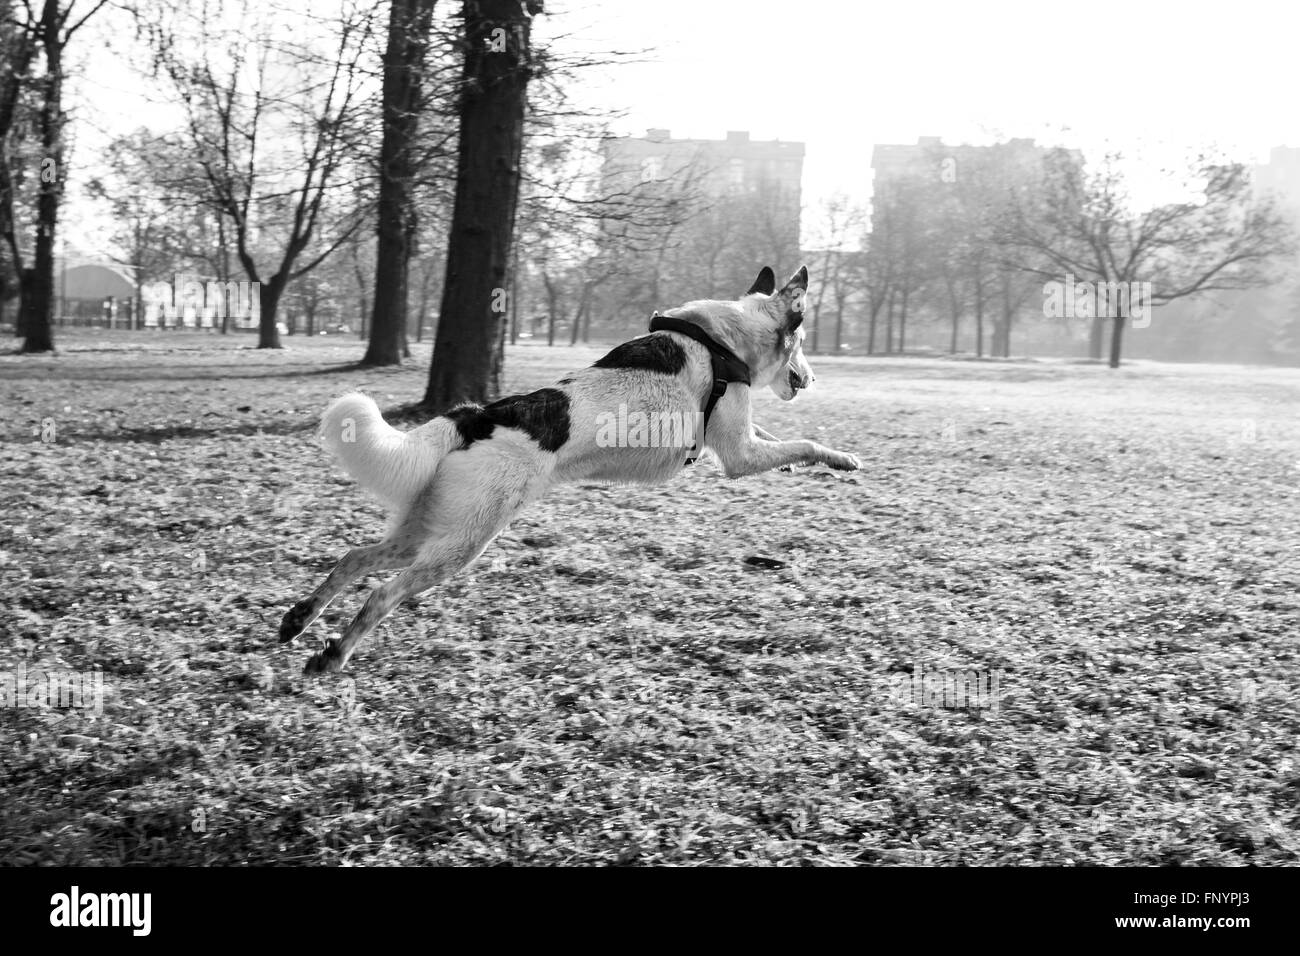 Perro saltando y jugando en el parque. Italia, 2015. Foto de stock